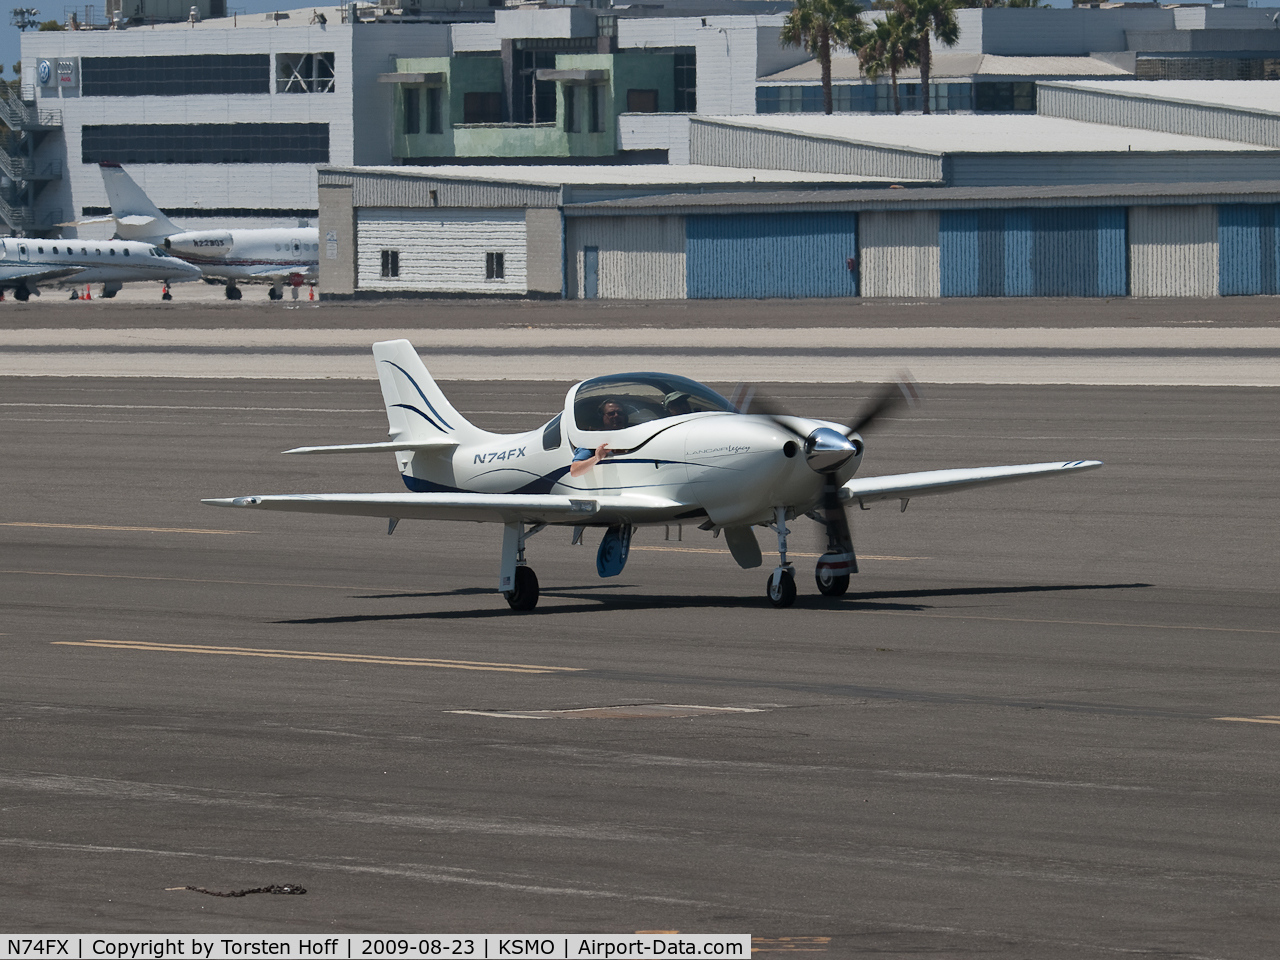 N74FX, 2007 Lancair Legacy C/N L2K-283, N74FX taxiing